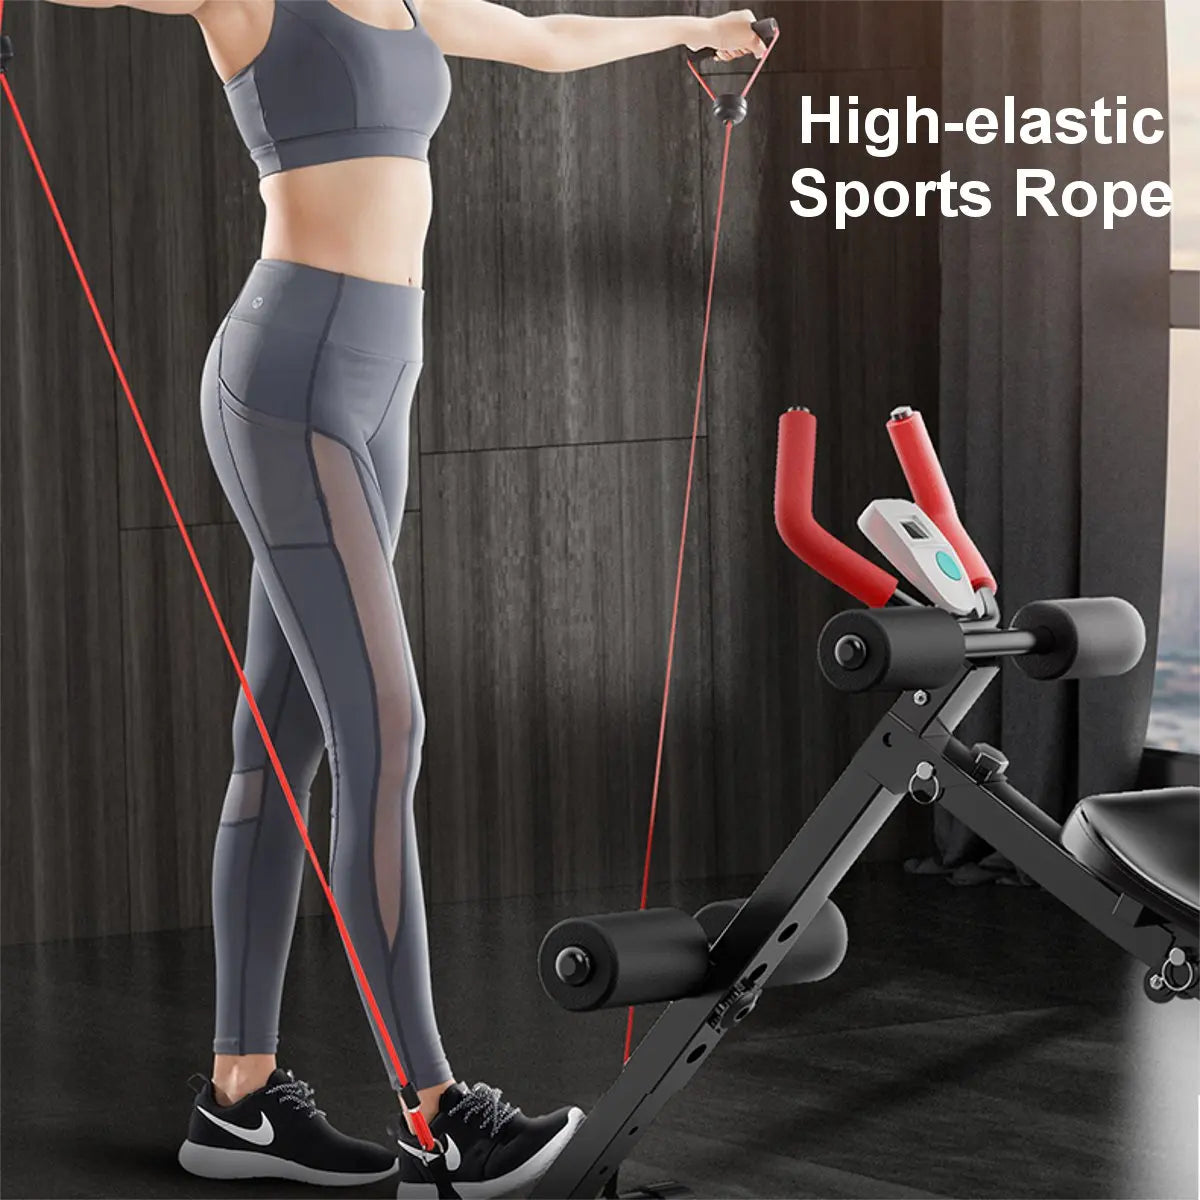 Taille Bauch Muskel Fitness Training Faltbare Sit-Up Bänke Werkzeug Einstellbare Übungen Trainer Home Gym Fitness Ausrüstung